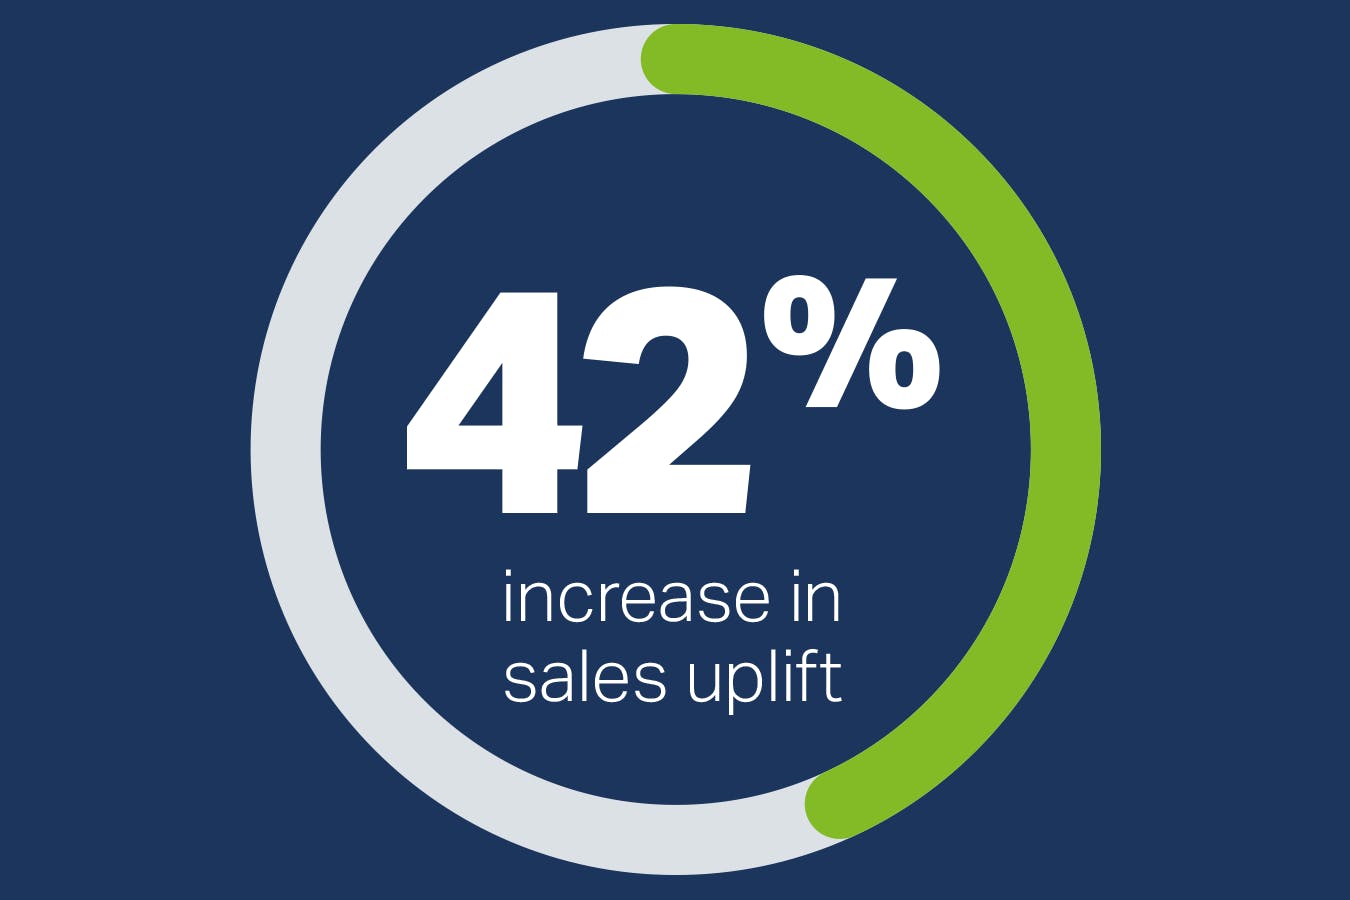 42% increase in sales uplift statistic